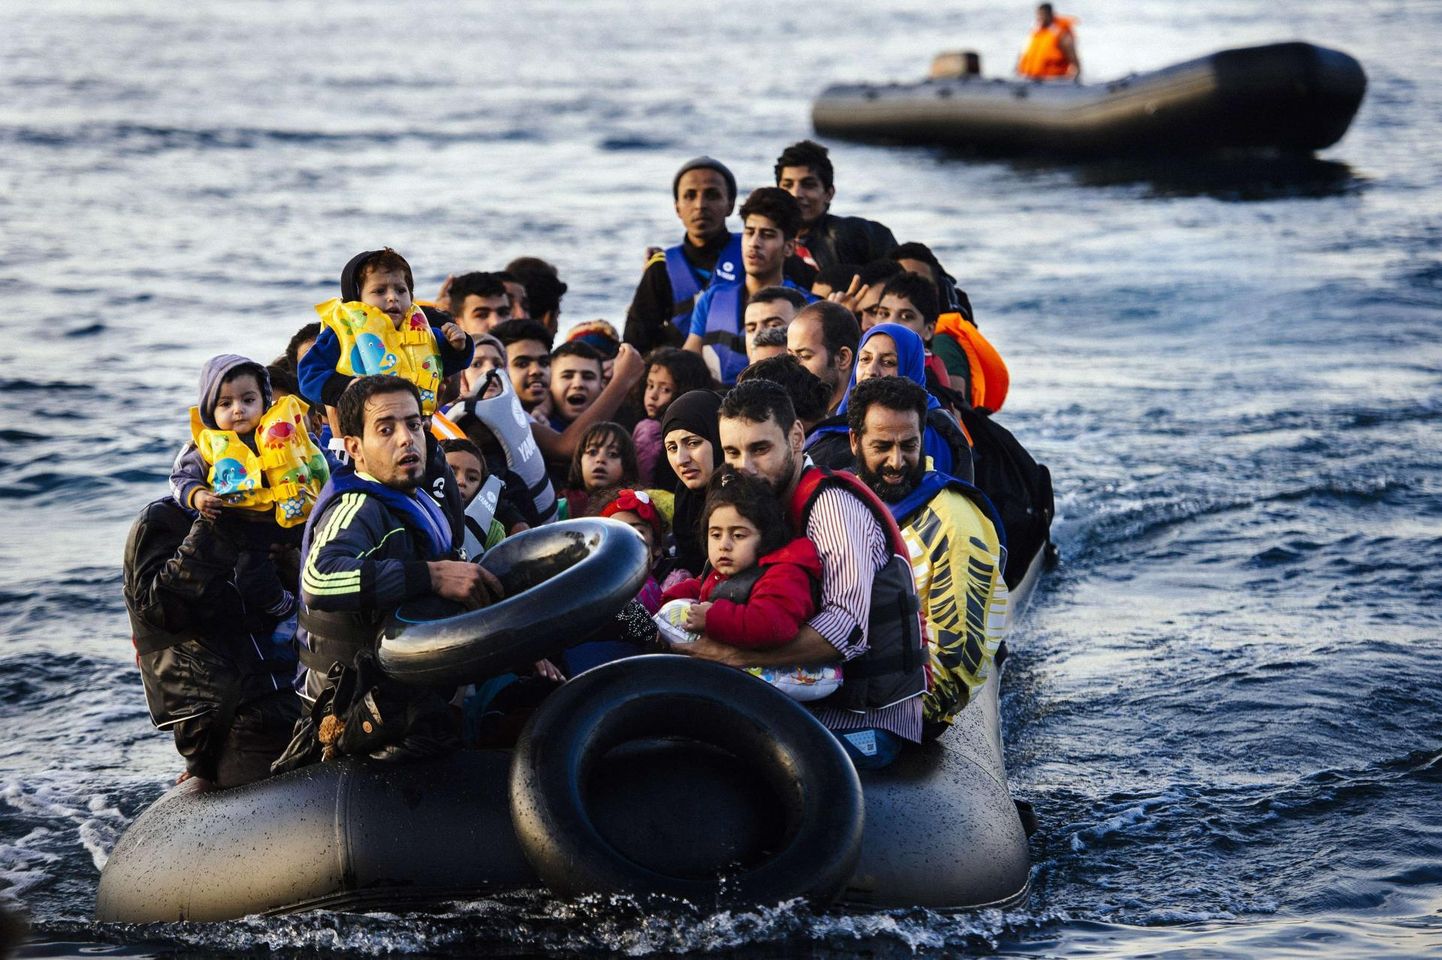 Migrandid saabumas Lesbose saarele 14. oktoobril 2015. 